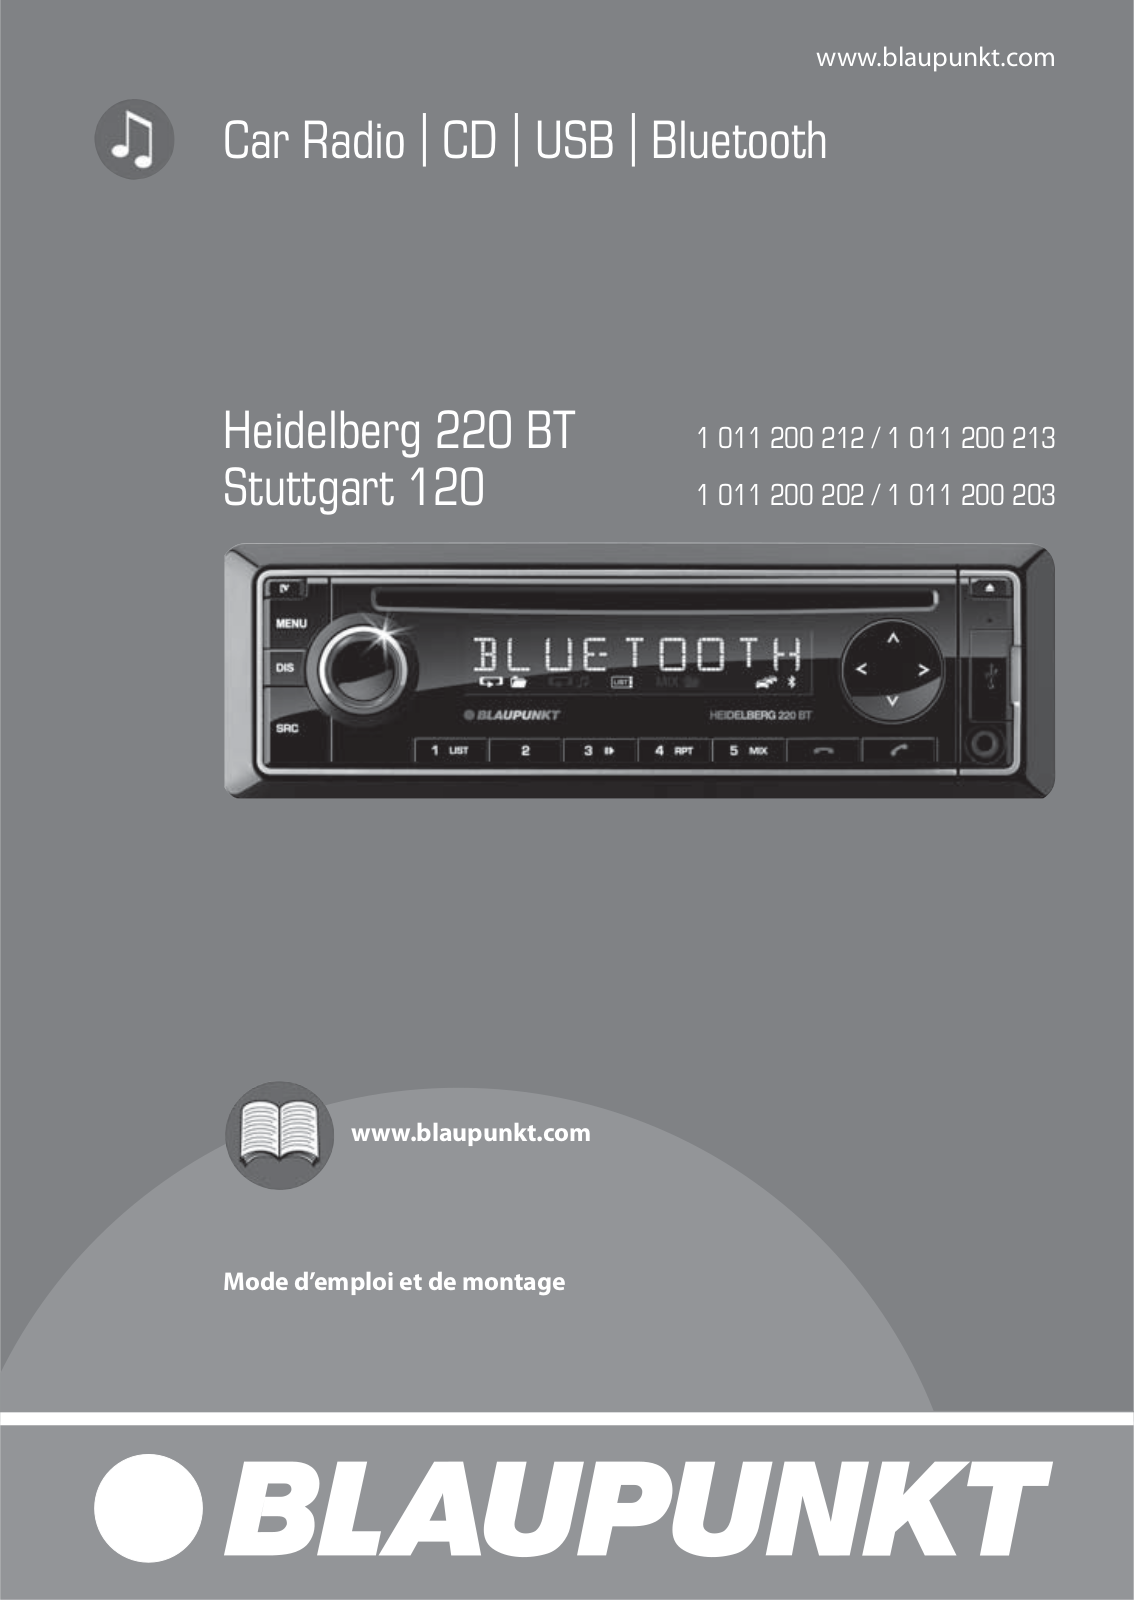 BLAUPUNKT HEIDELBERG 220 BT, STUTTGART 120 User Manual